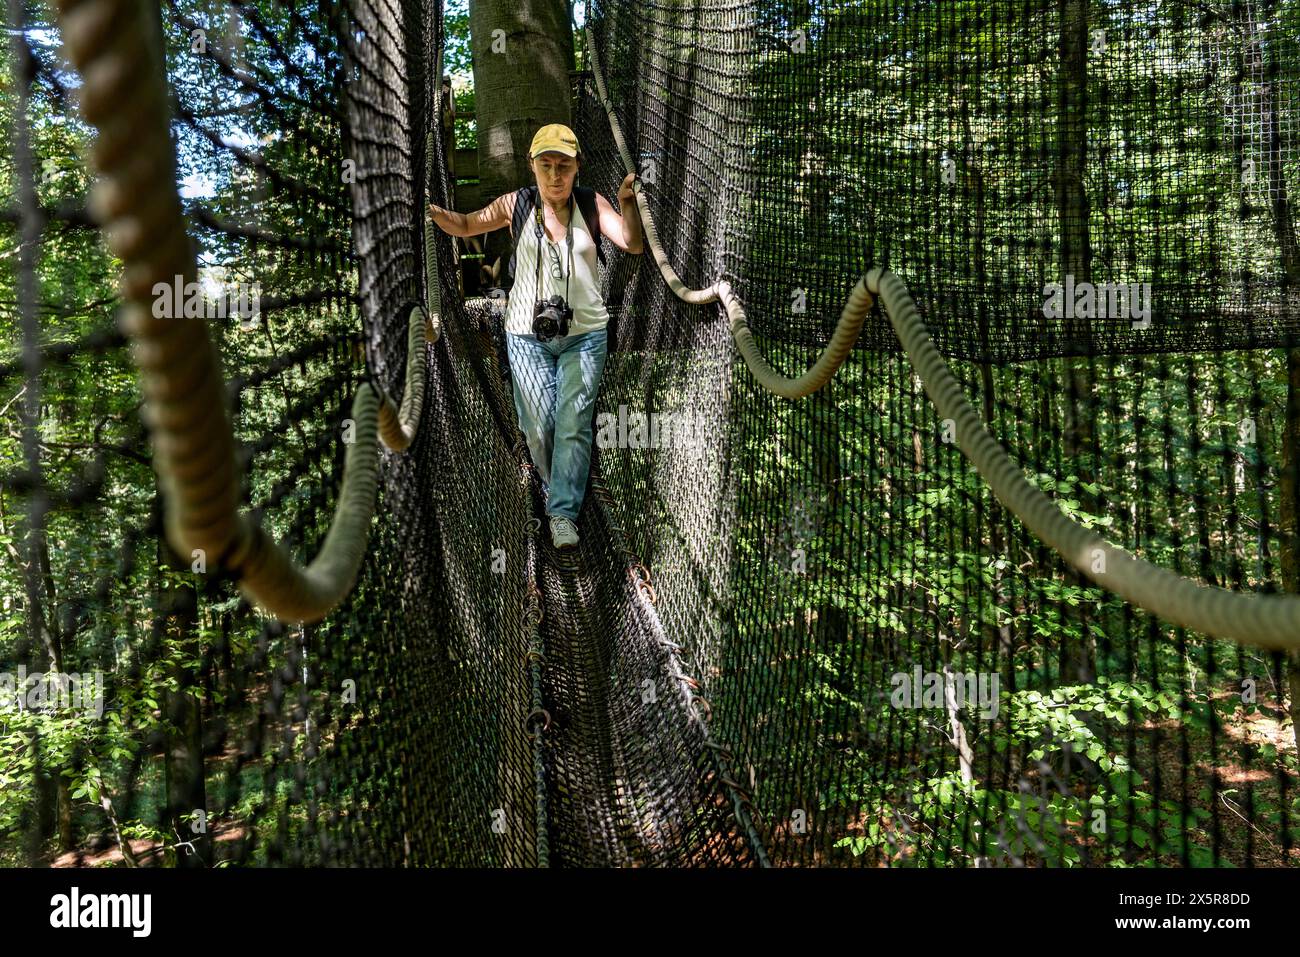 Femme sportive, touriste avec caméra dans le sentier de cime des arbres, ponts suspendus, cordes, filets, forêt de hêtres, excursion, sommet montagne Hoherodskopf, tertiaire Banque D'Images